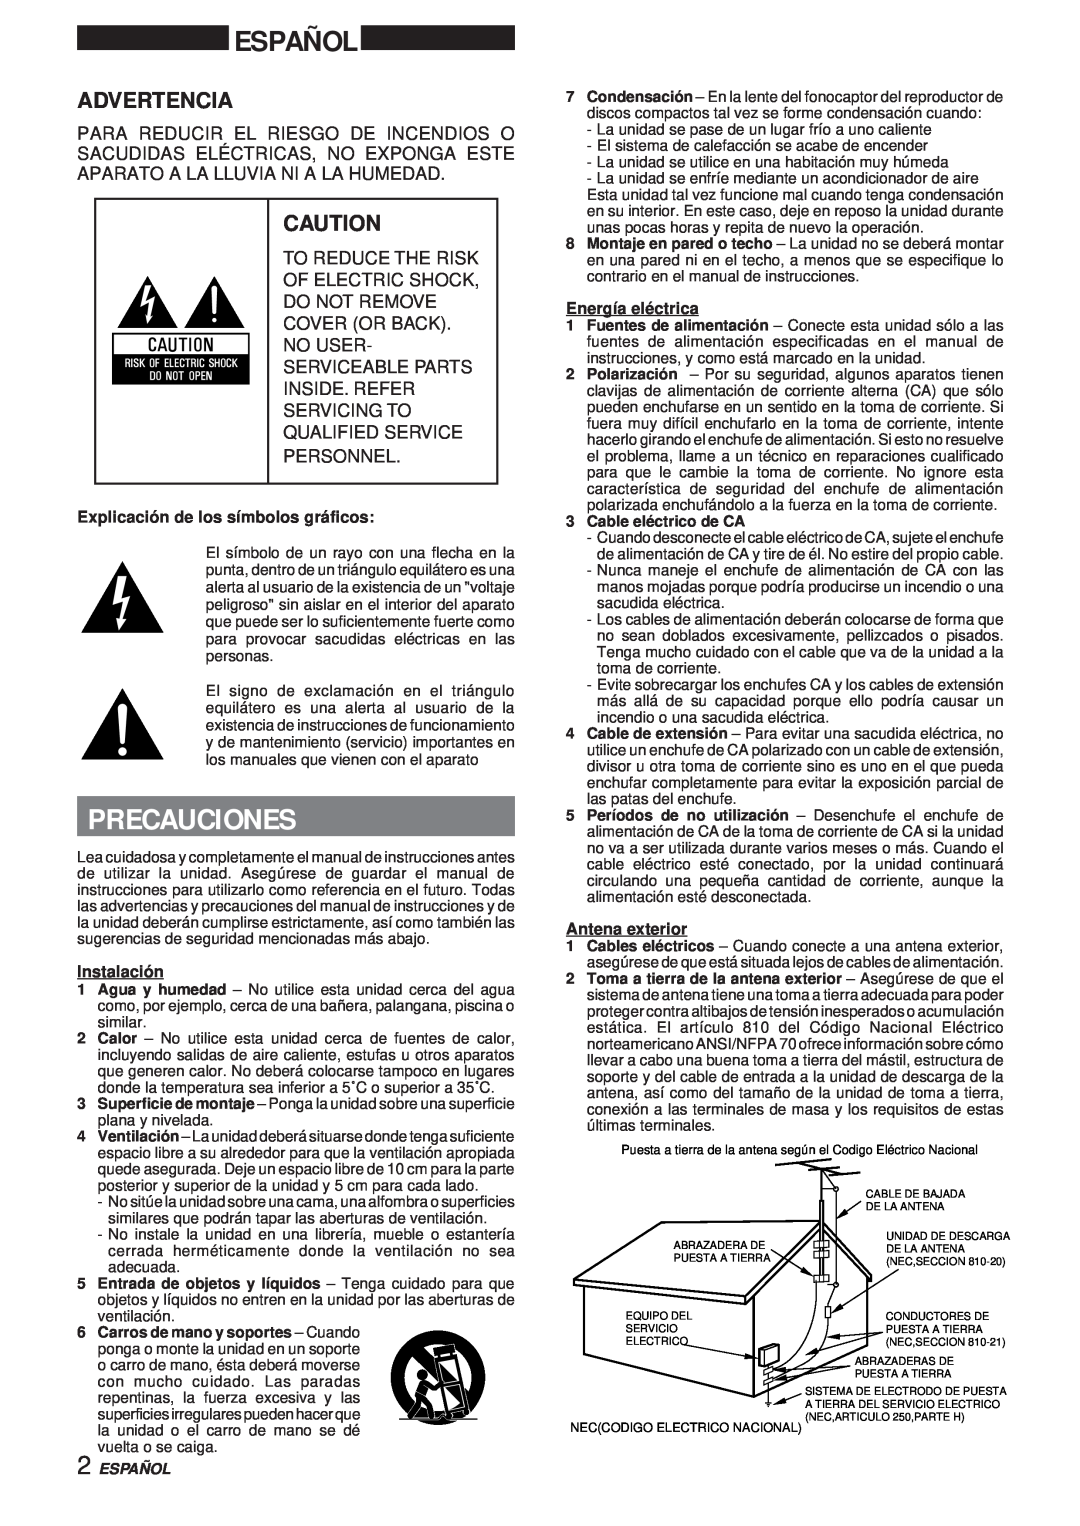 Aiwa XR-MS3 manual Español, Precauciones, Advertencia, Explicación de los símbolos gráficos, Instalación, Energía eléctrica 